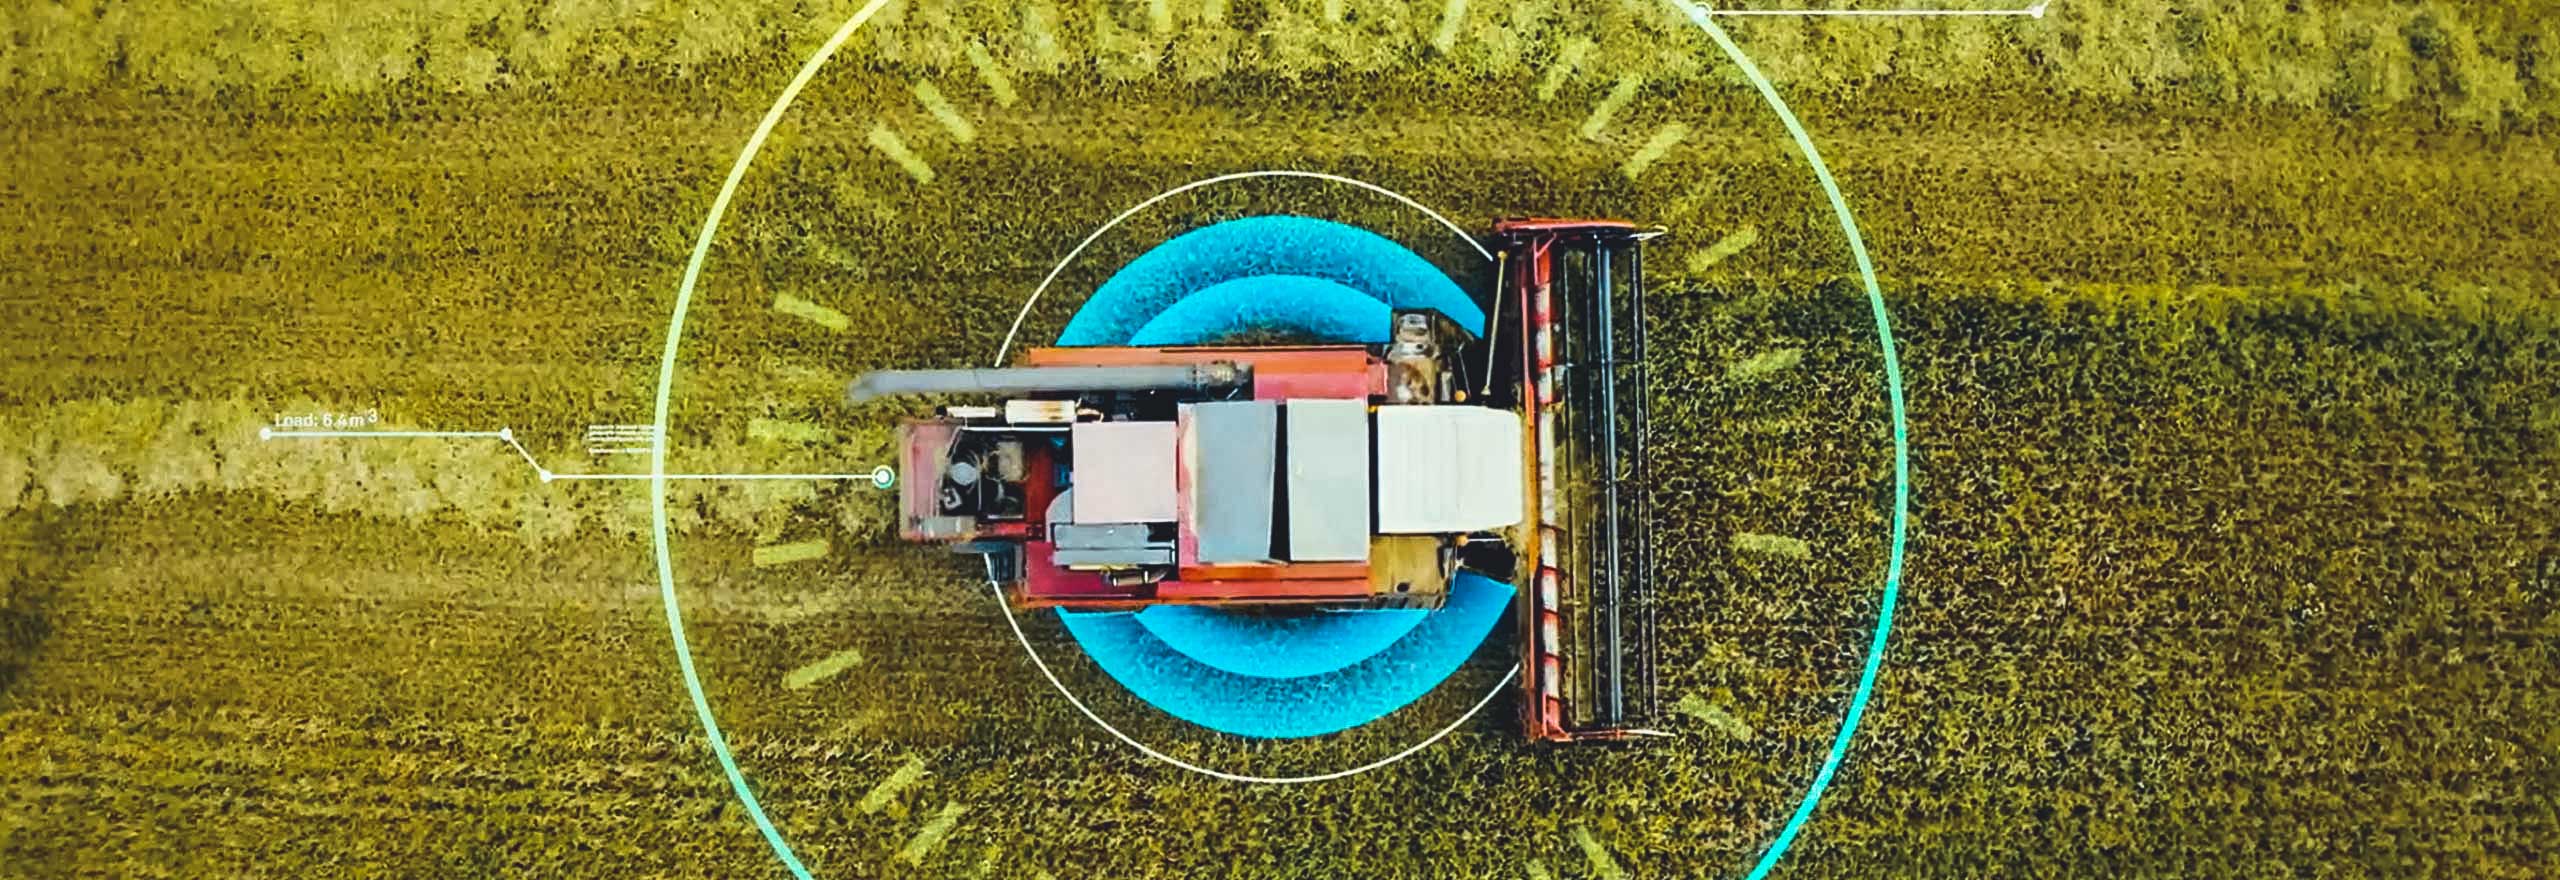 Image d’un tracteur dans un champ recouvert d’éléments numériques représentant le « Smart Farming » (l’agriculture de pointe).